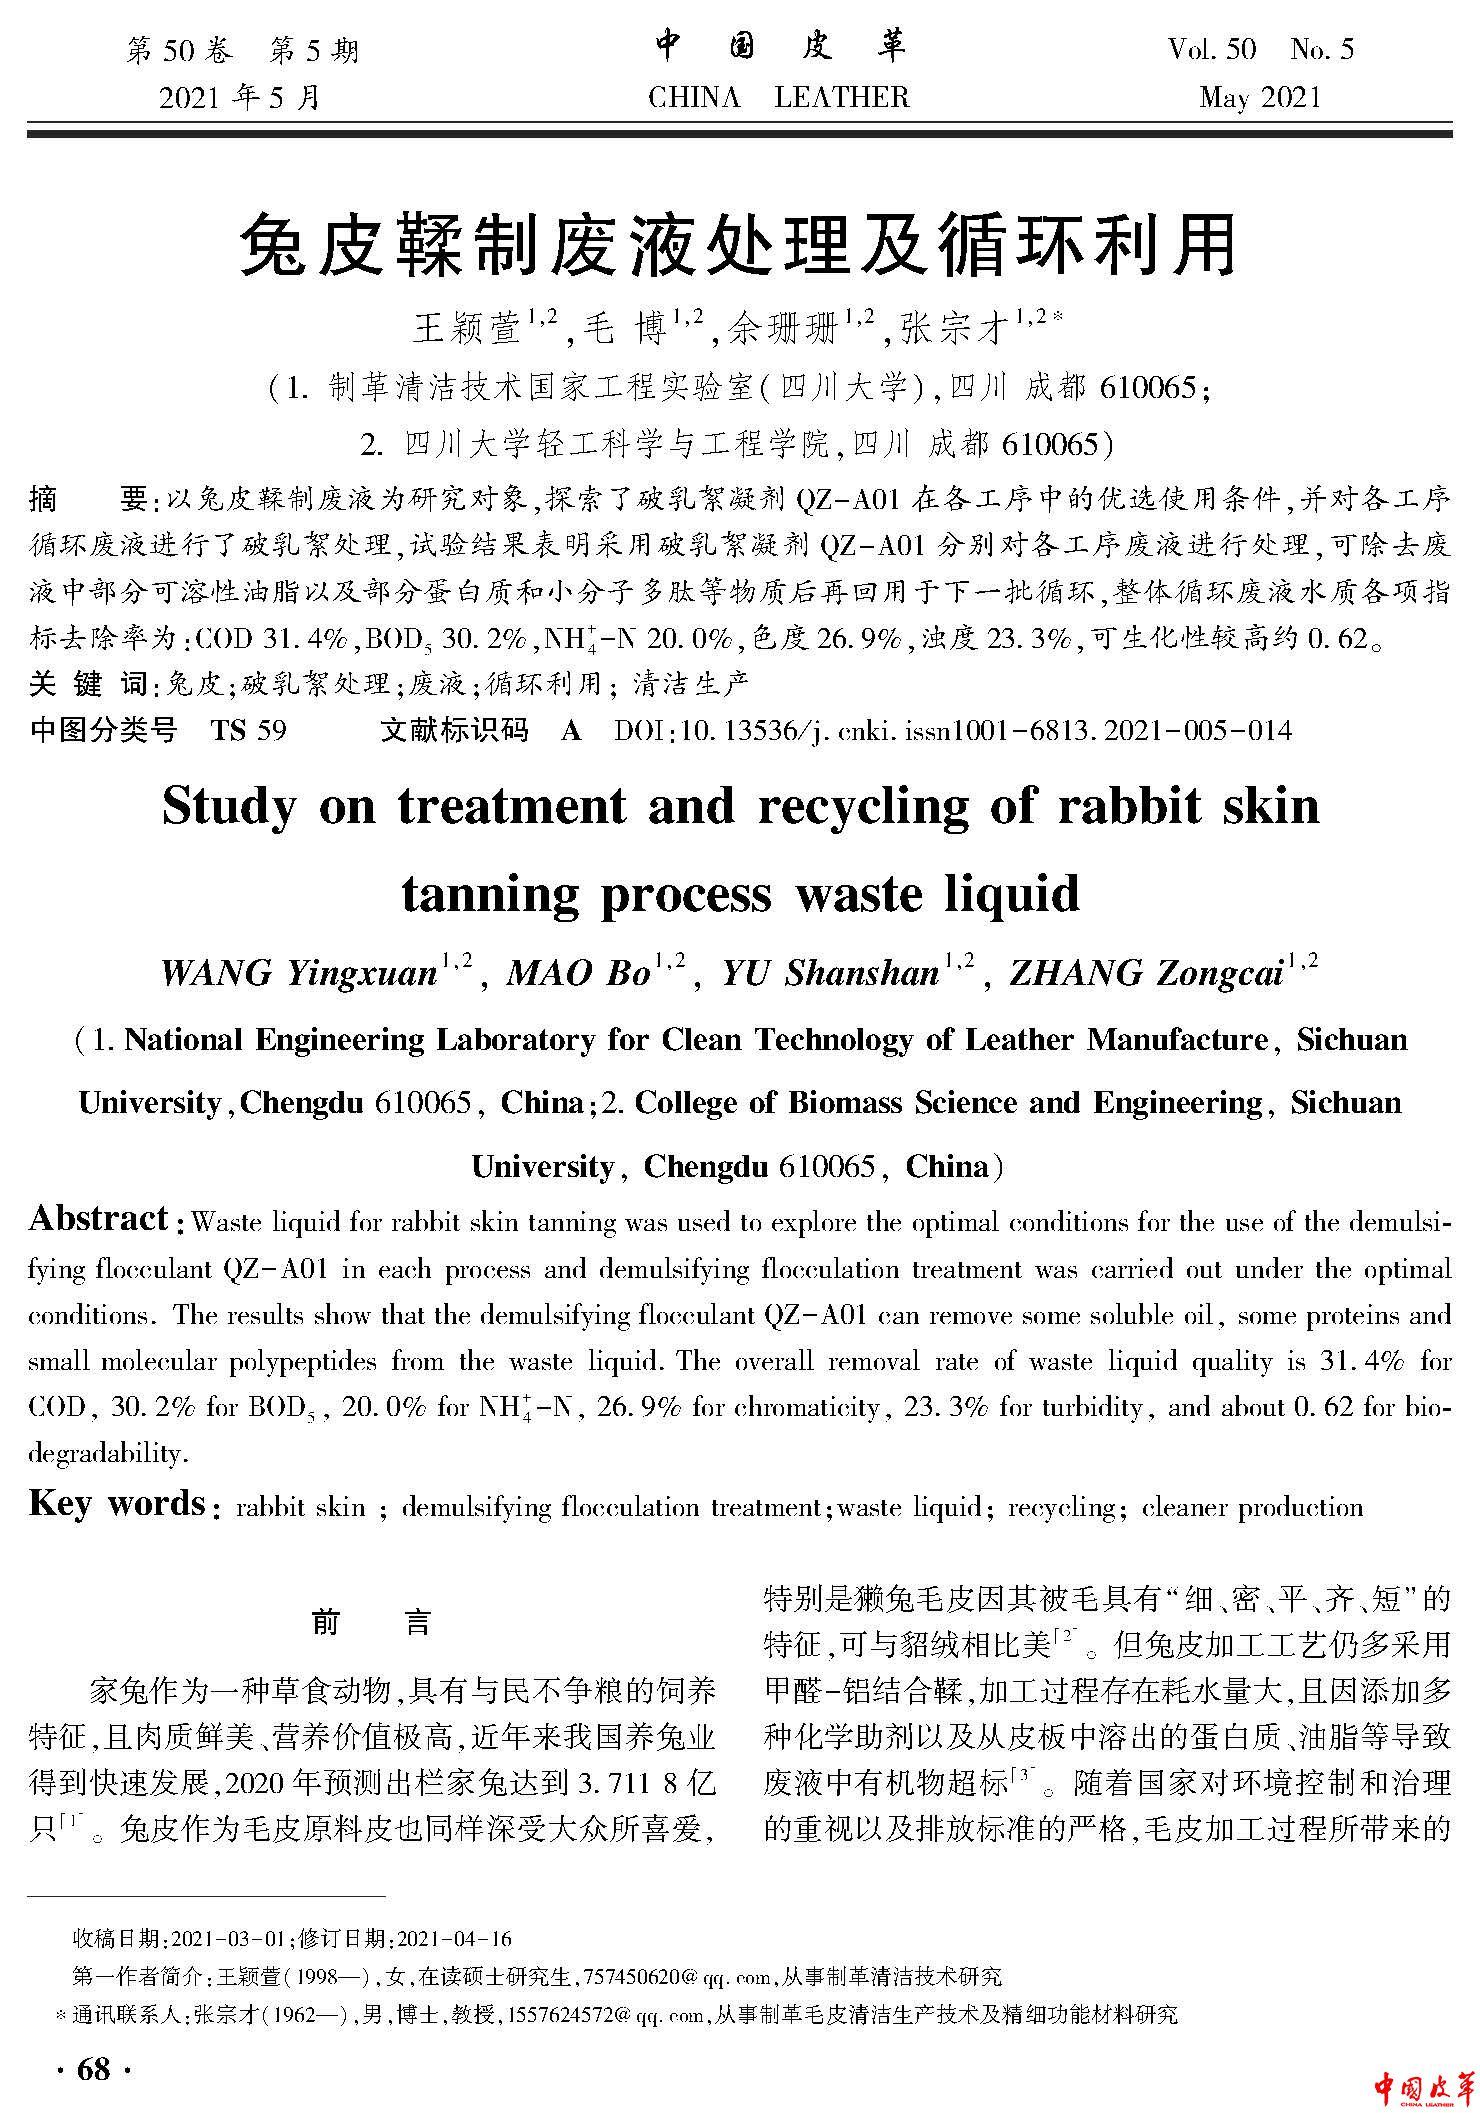 页面提取自－14 兔皮鞣制废液处理及循环利用.jpg